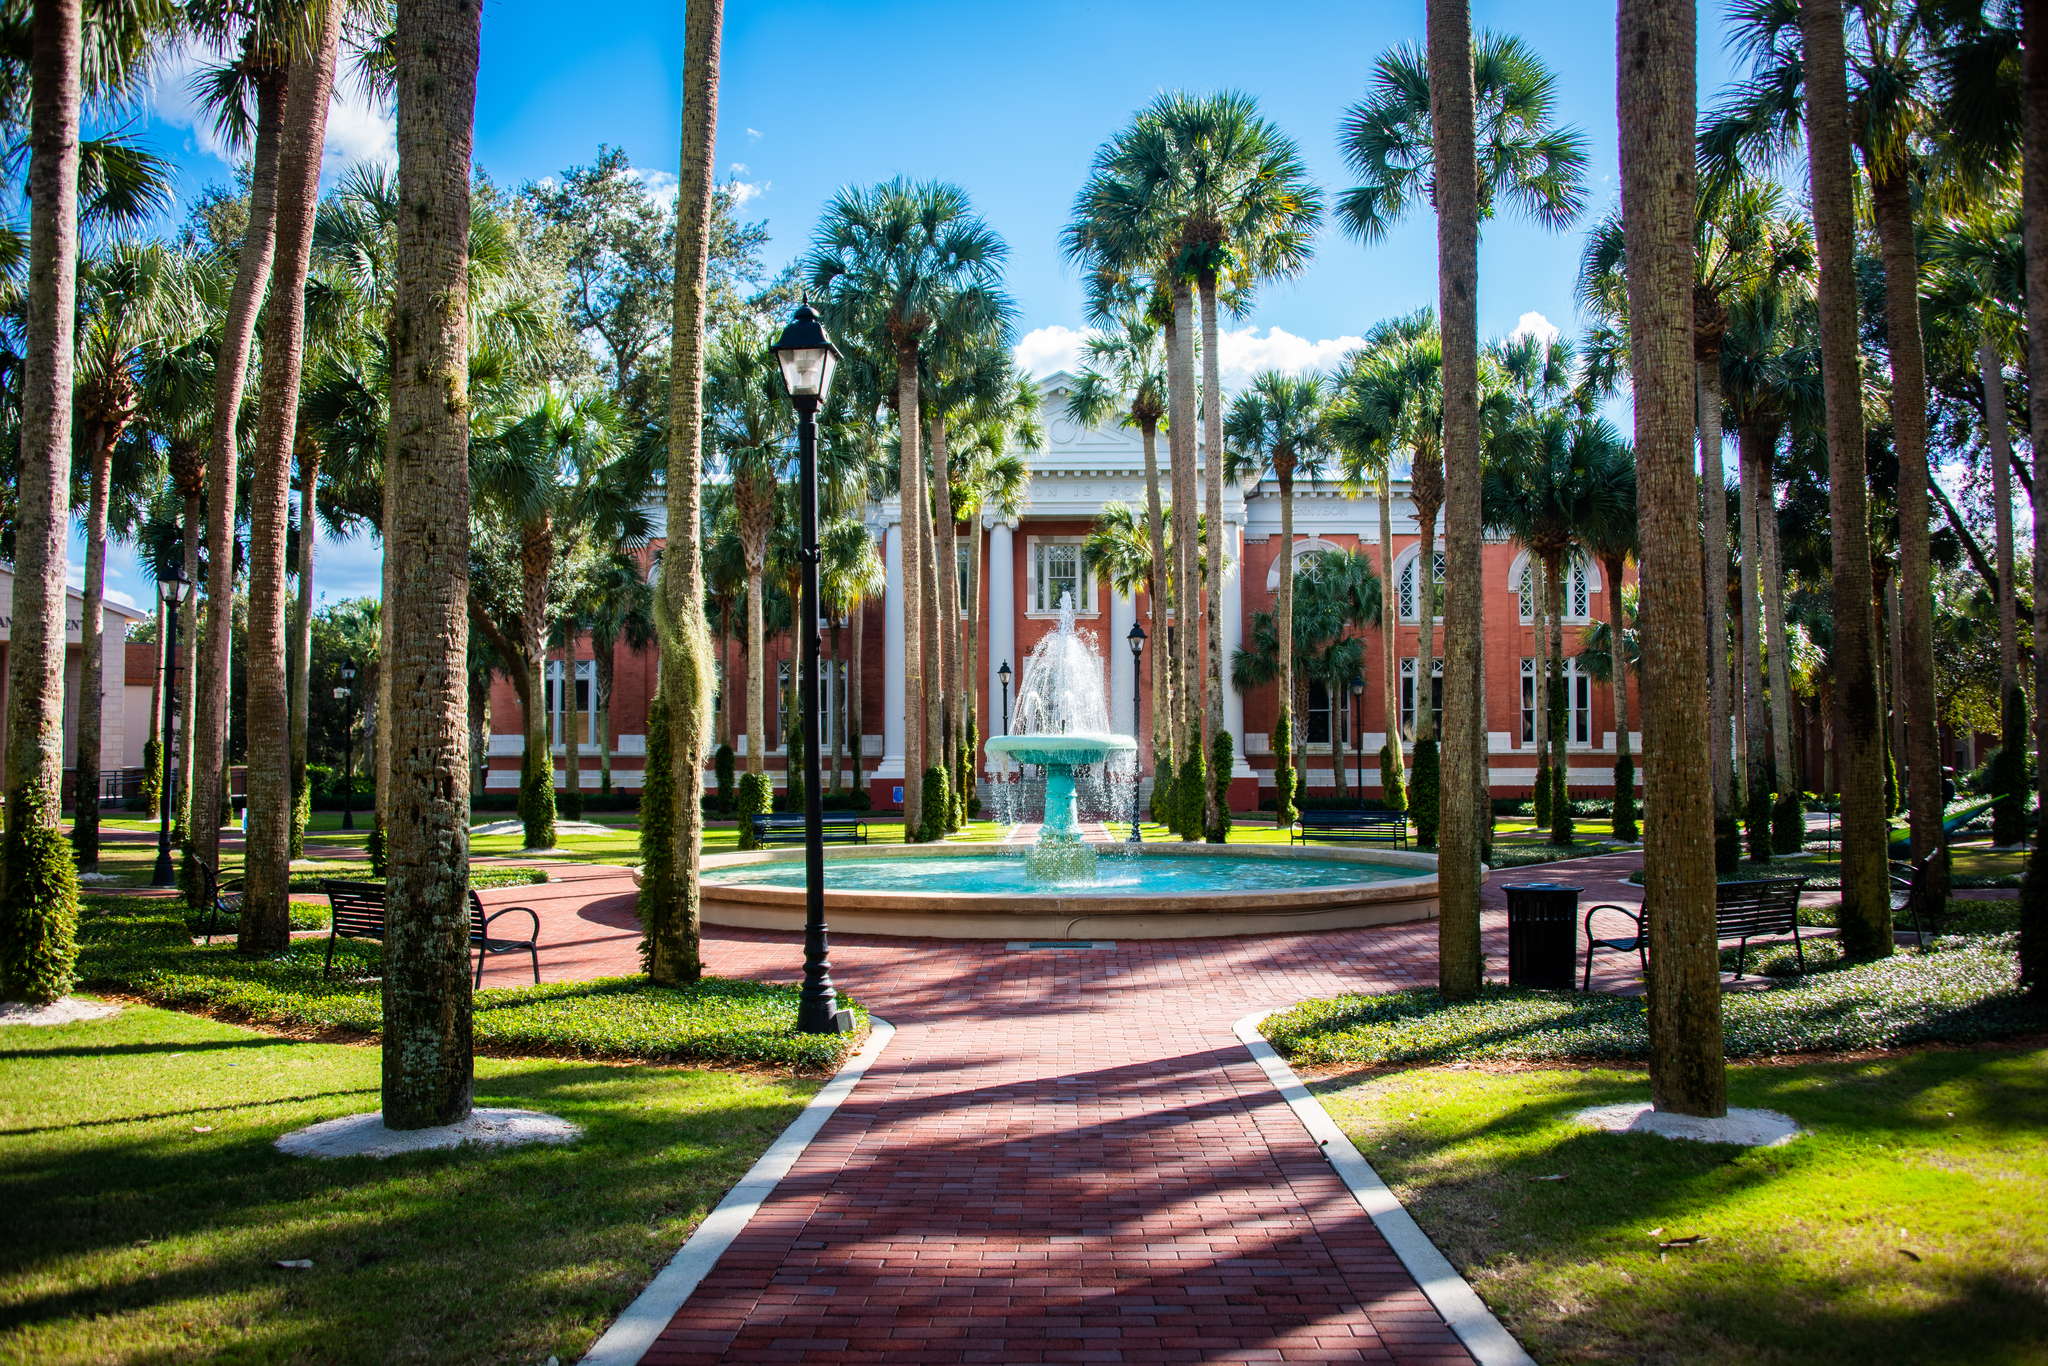 Palm Court Fountain